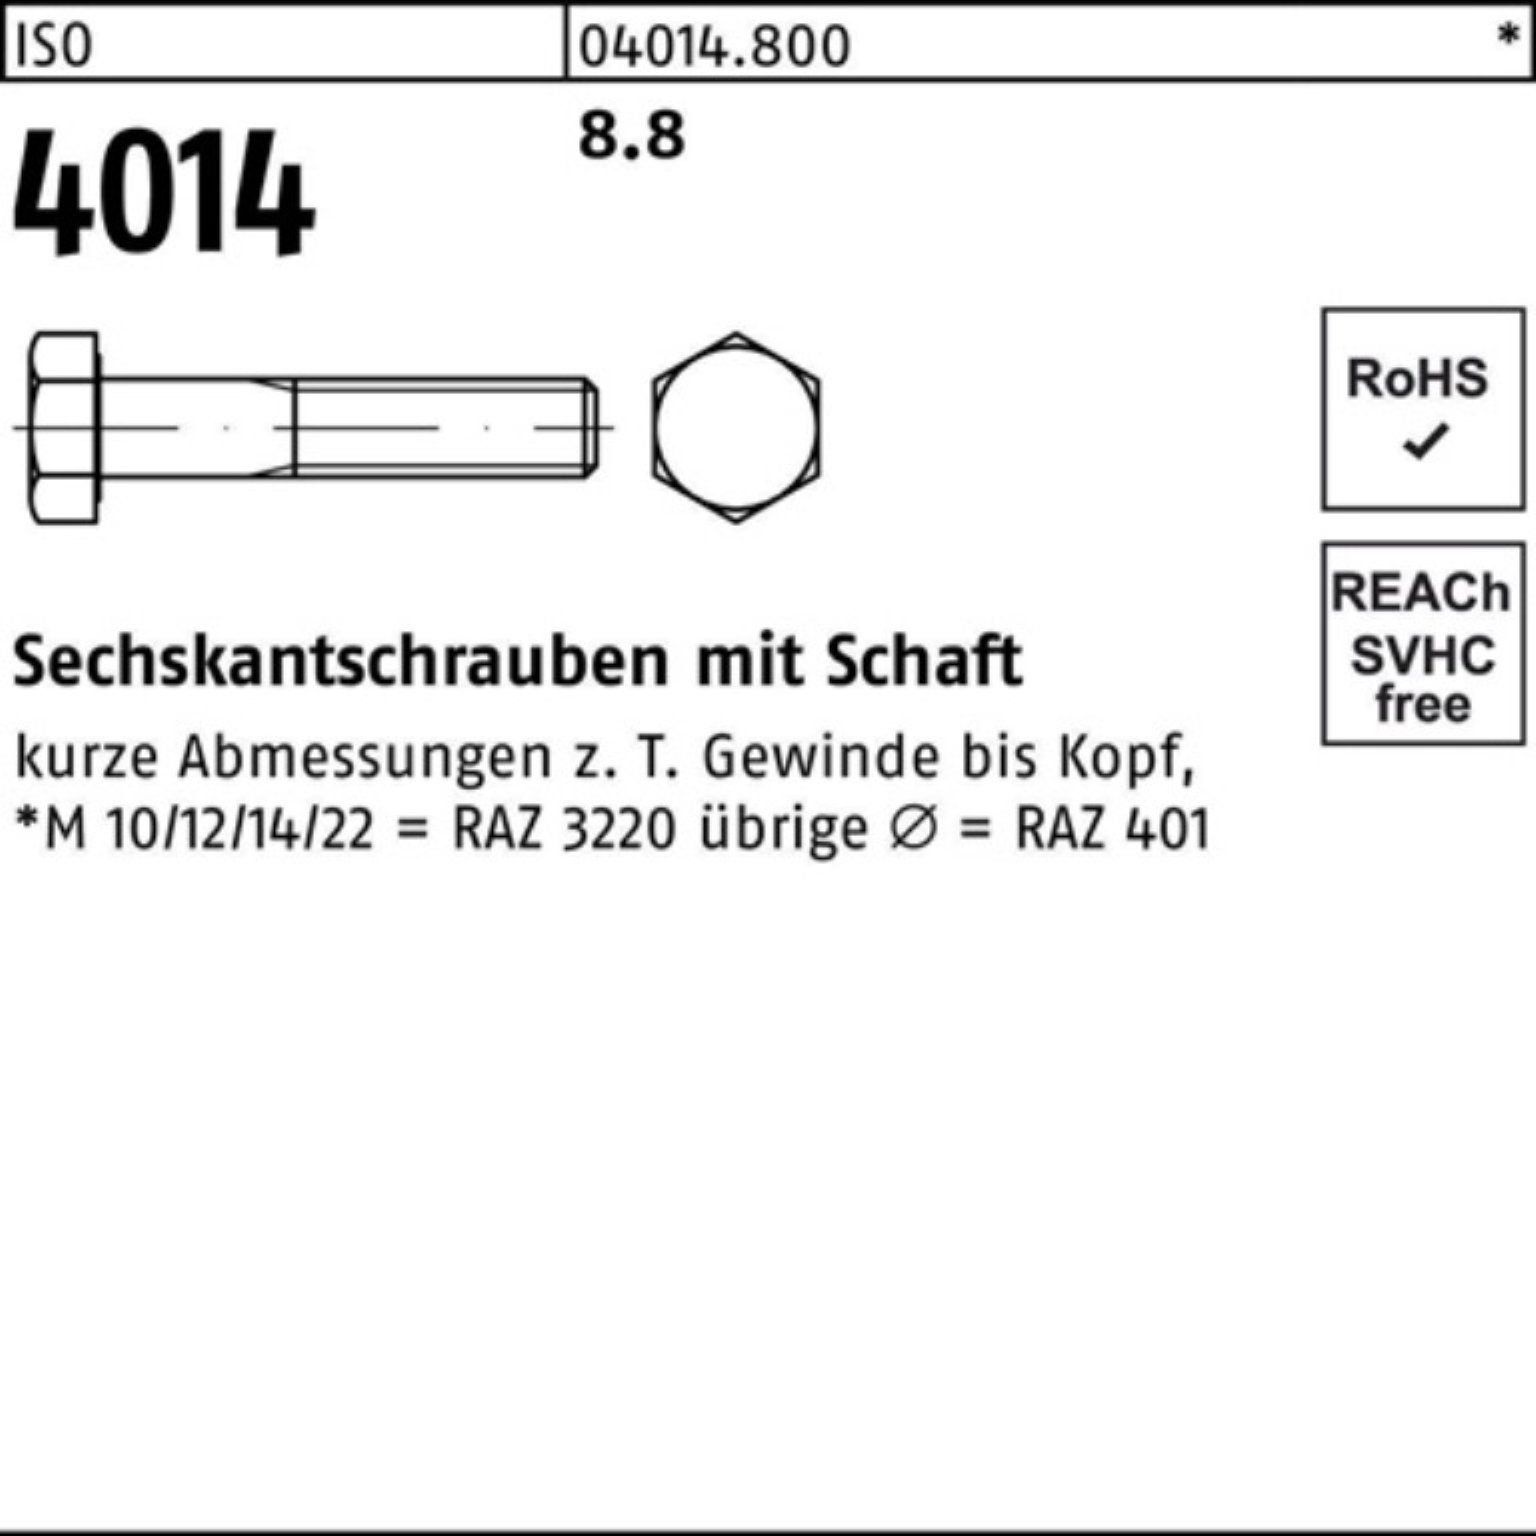 Bufab Sechskantschraube 100er 8.8 IS Stück 50 Schaft 105 ISO Pack 4014 Sechskantschraube M12x